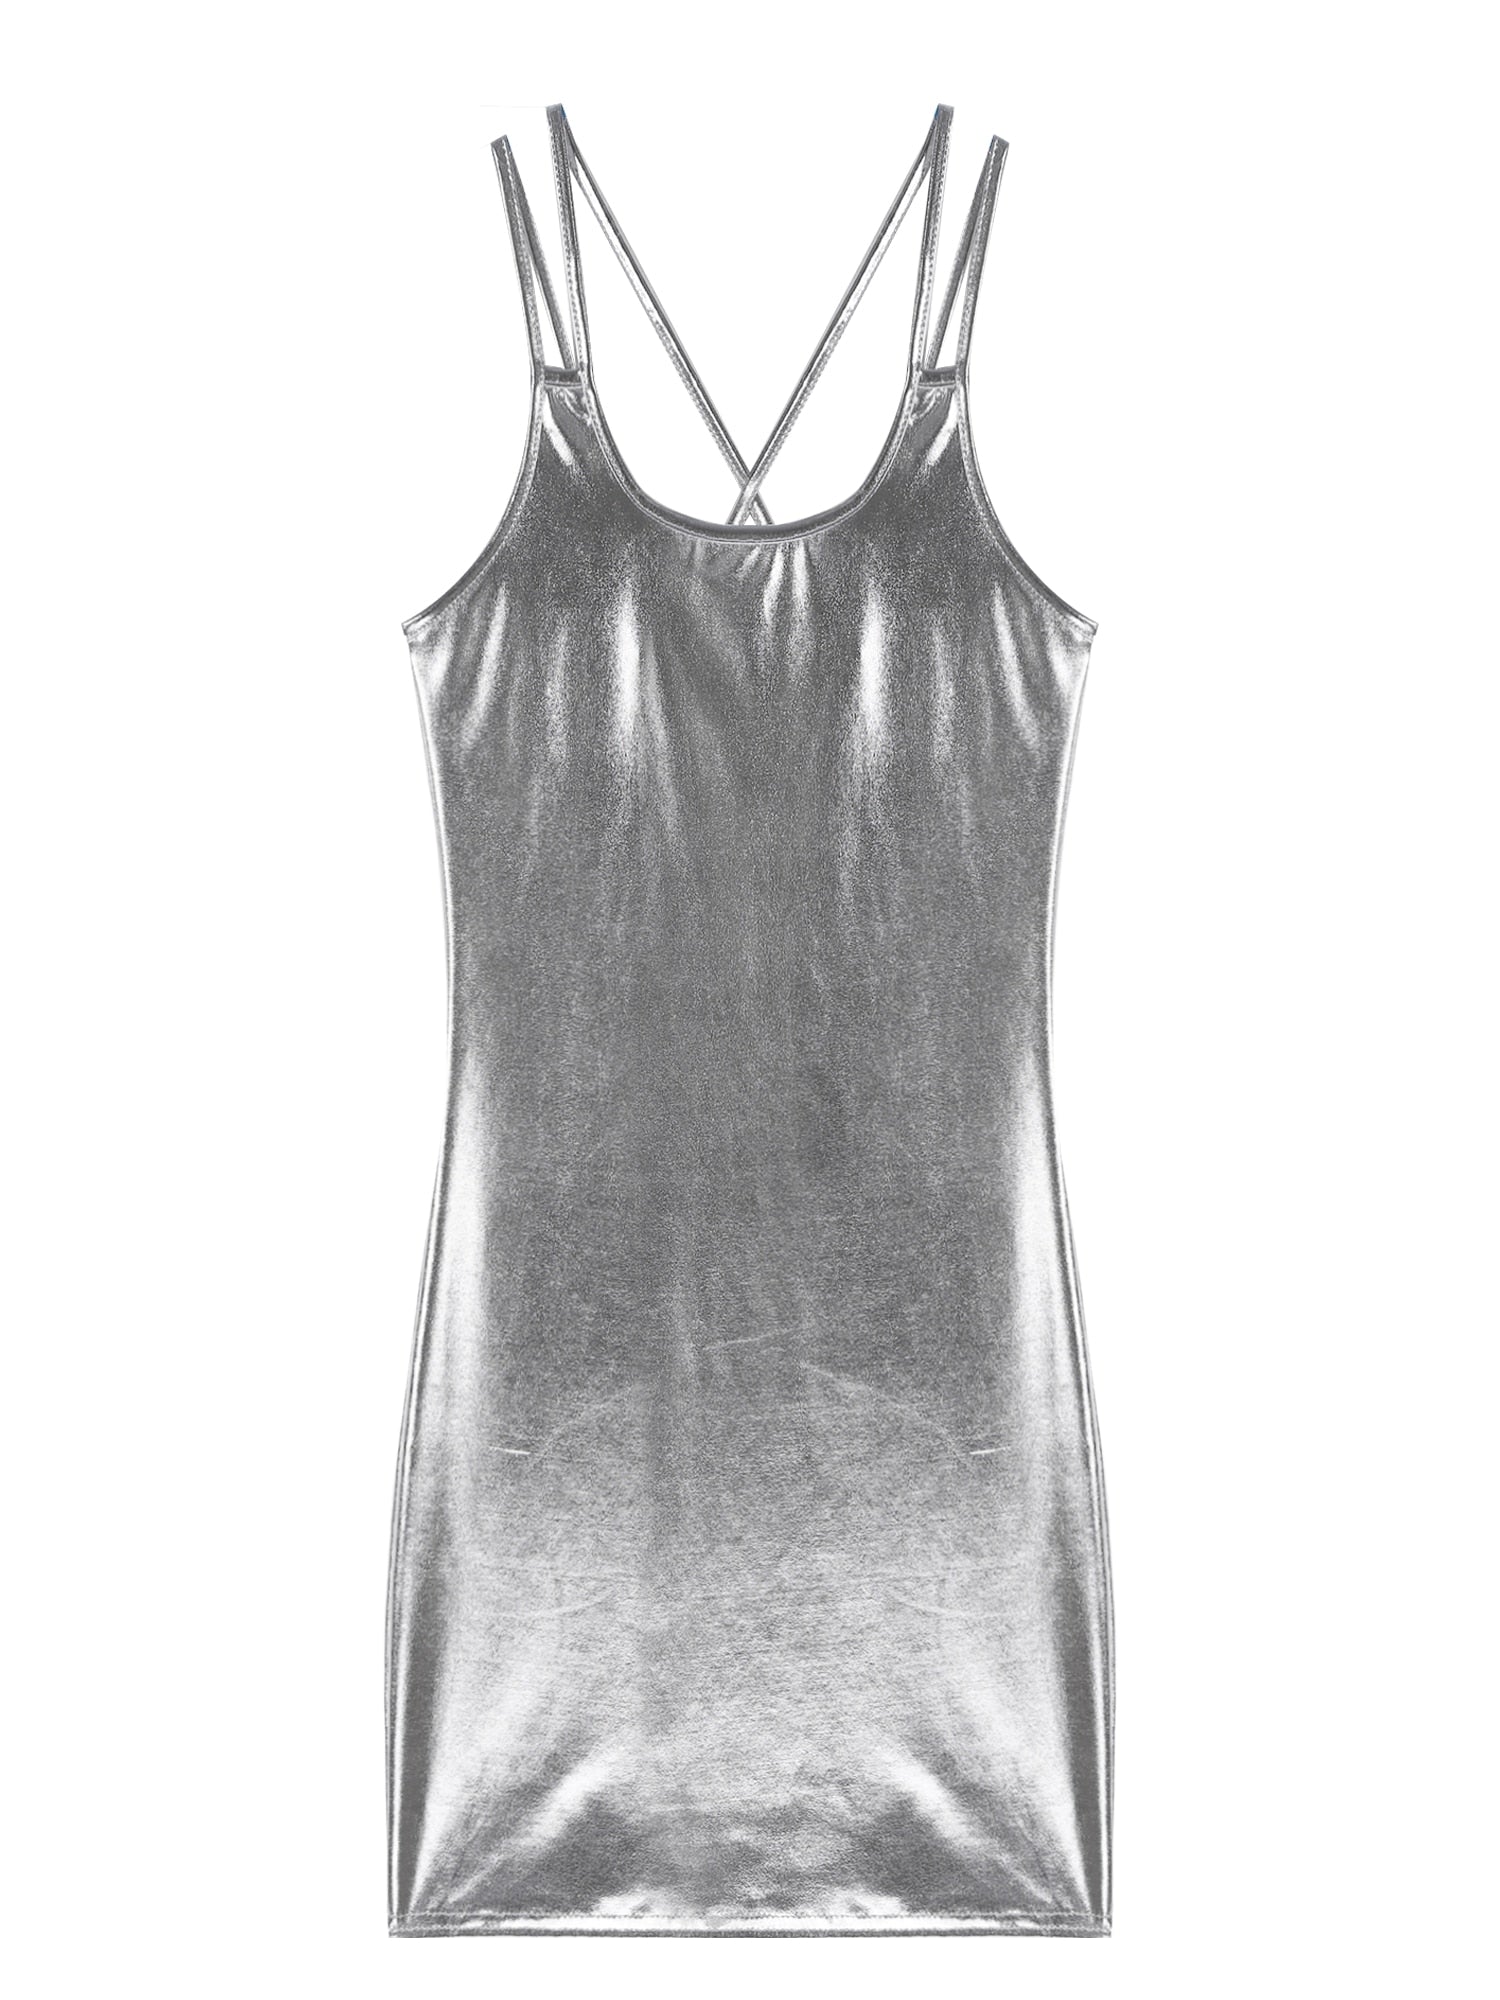 Damen Metallic Bodycon Minikleid | Glänzendes Lacklederkleid mit Spaghetti-Trägern | Clubwear und Party-Outfit - undergroundtechnostore.de